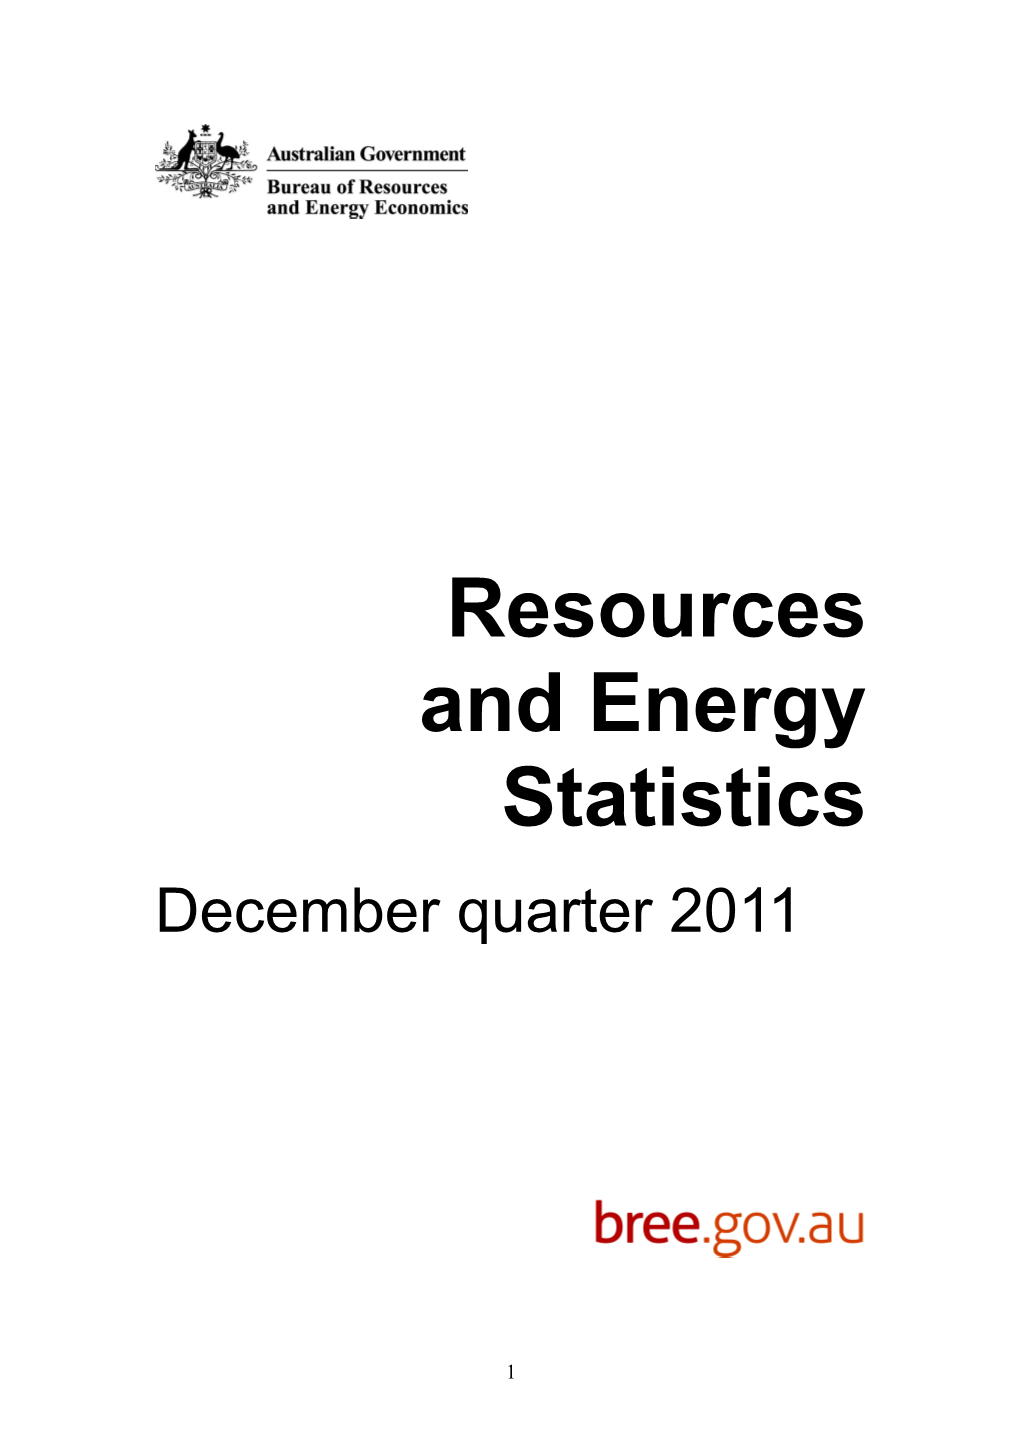 Resources and Energy Statistics - September Quarter 2011